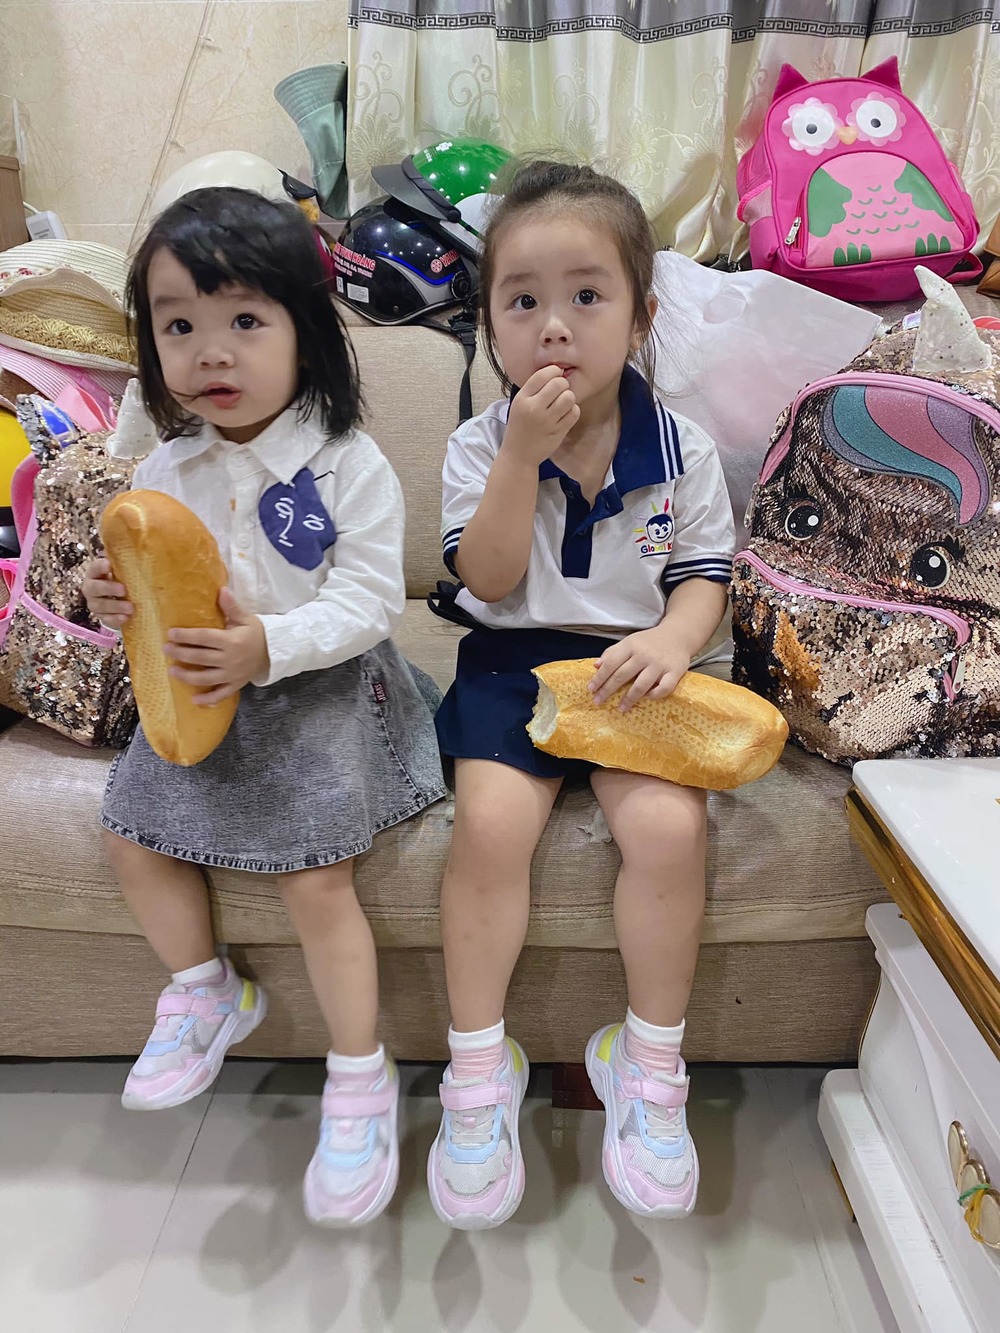  
Hai con gái Hoài Lâm được mẹ chuẩn bị váy áo xinh xắn để đến trường mầm non. (Ảnh: FBNV) - Tin sao Viet - Tin tuc sao Viet - Scandal sao Viet - Tin tuc cua Sao - Tin cua Sao